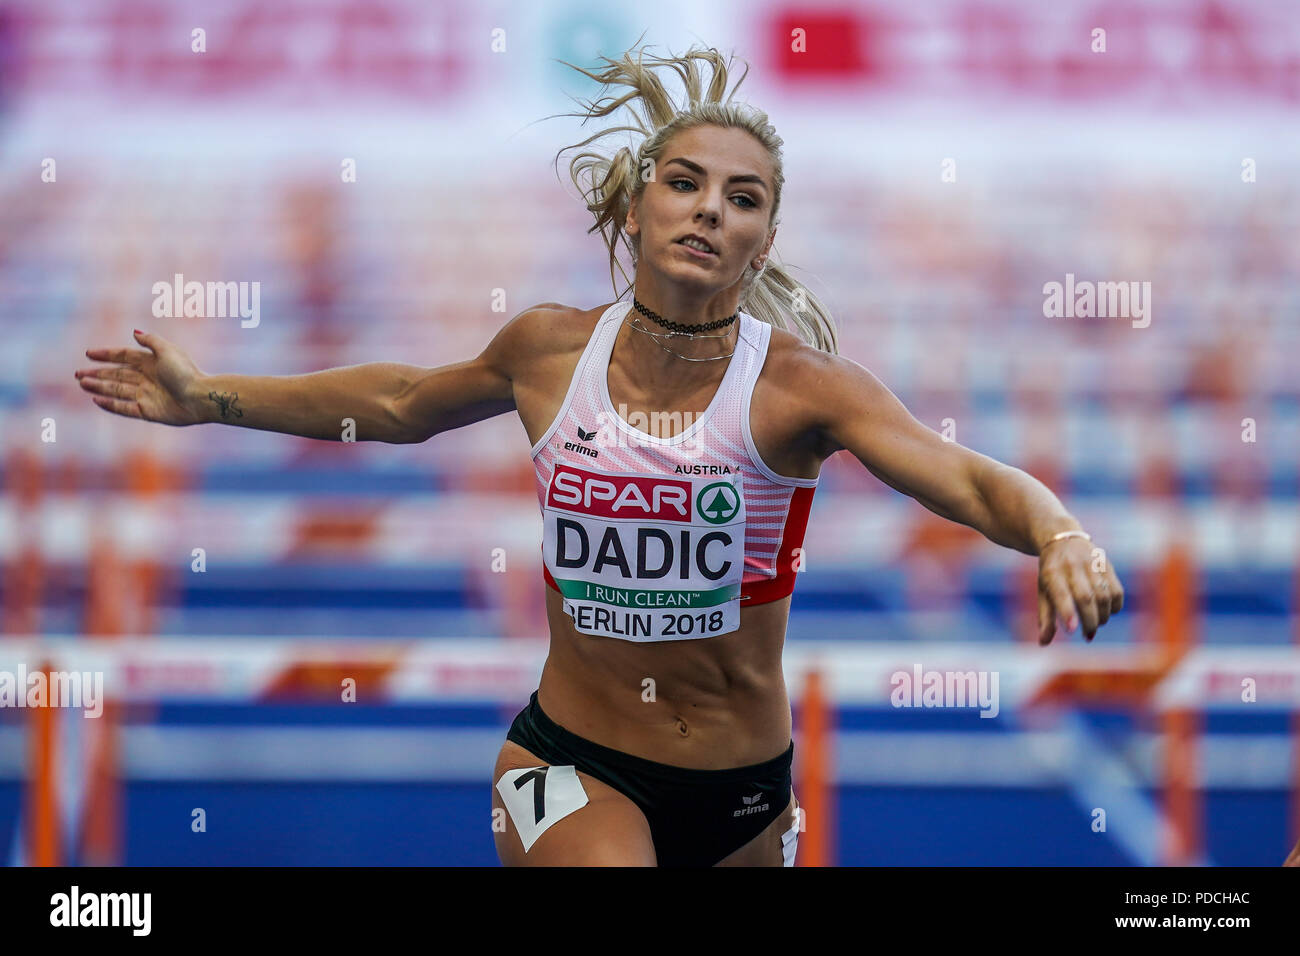 August 9, 2018: Ivona Dadic von Österreich und Xénia KrizsÃ¡n von Ungarn  während 100 Meter Hürden für Frauen als Teil der Heptatlon im  Olympiastadion in Berlin bei der Leichtathletik-WM. Ulrik Pedersen/CSM  Stockfotografie -